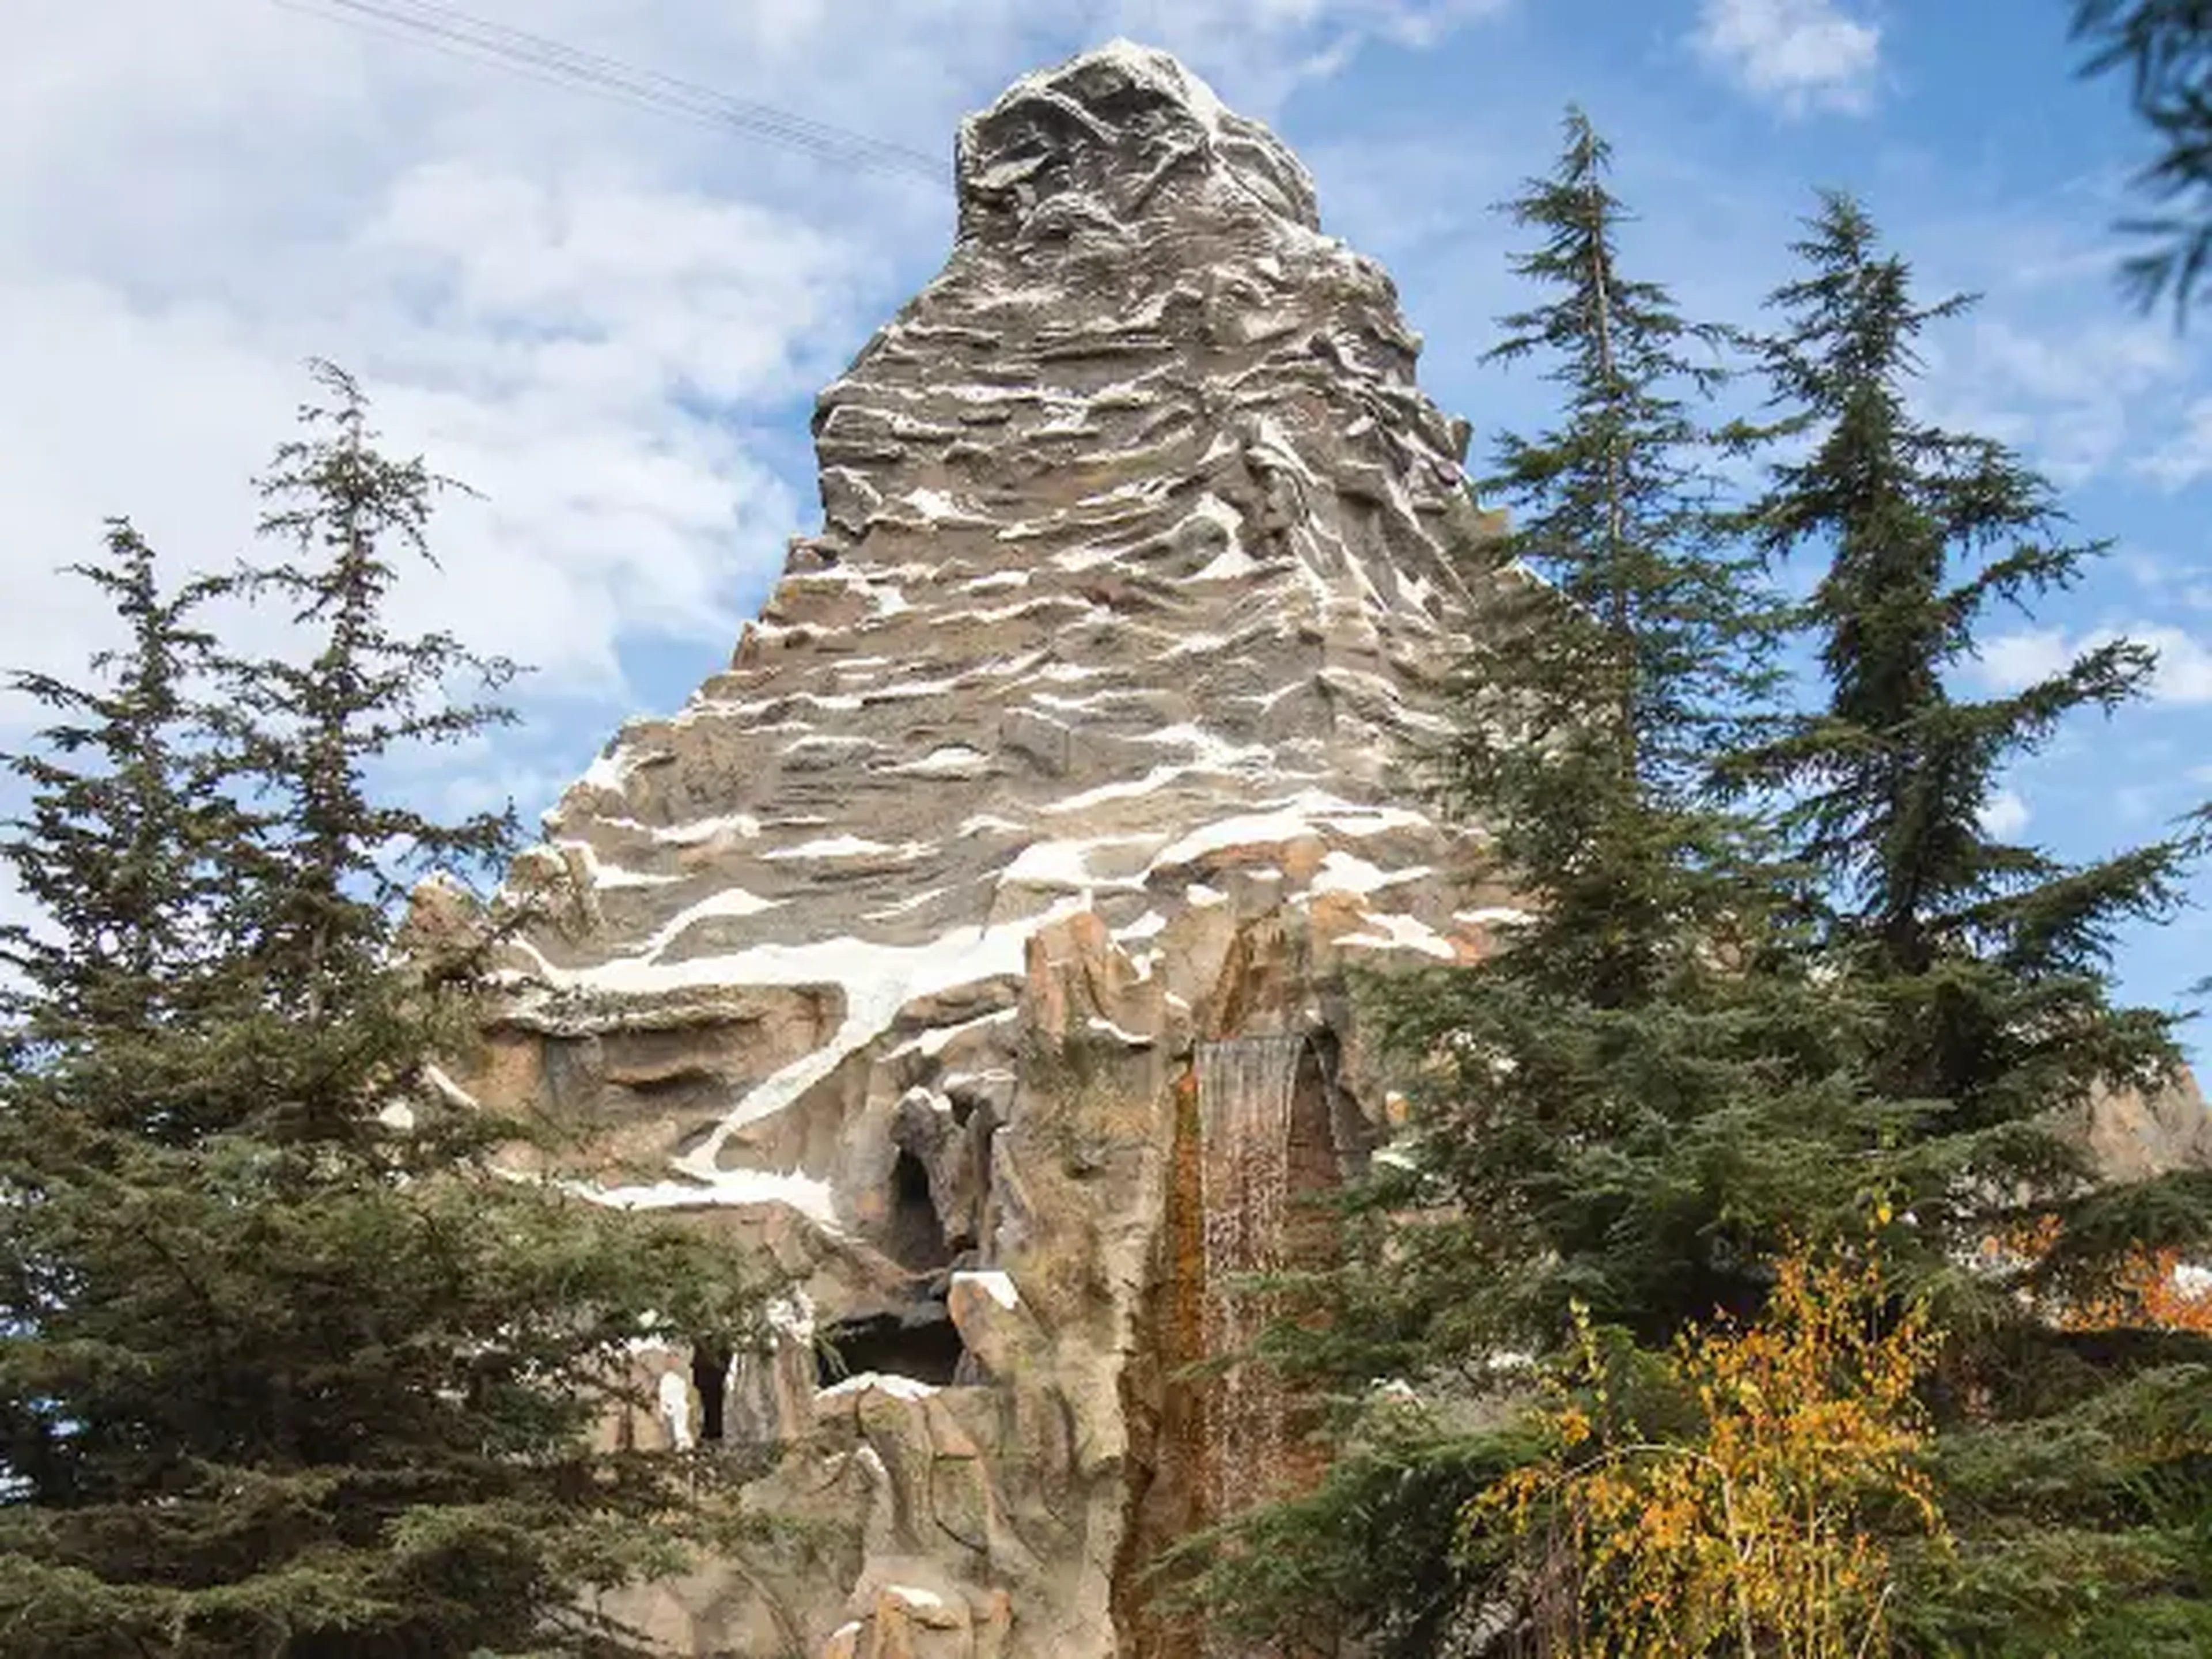 La estación de esquí podría haberse parecido a las Matterhorn Bobsleds (2 montañas rusas) de Disneylandia.